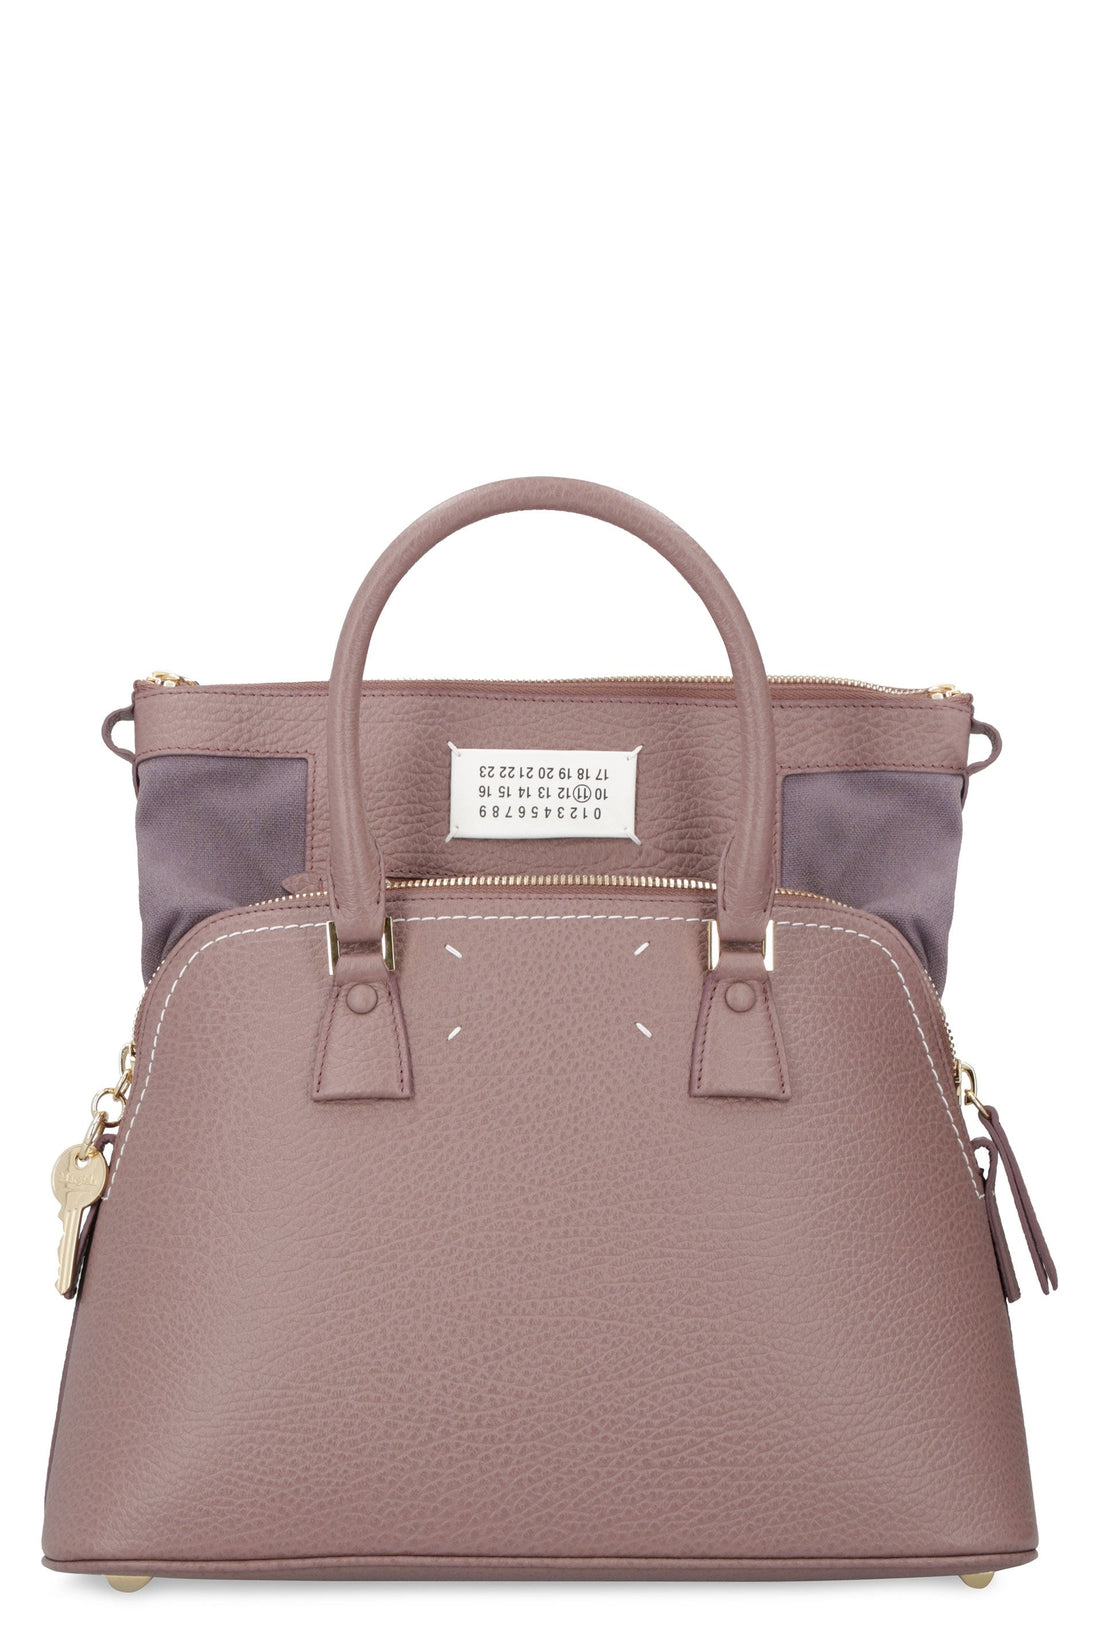 Maison Margiela-OUTLET-SALE-5AC leather handbag-ARCHIVIST